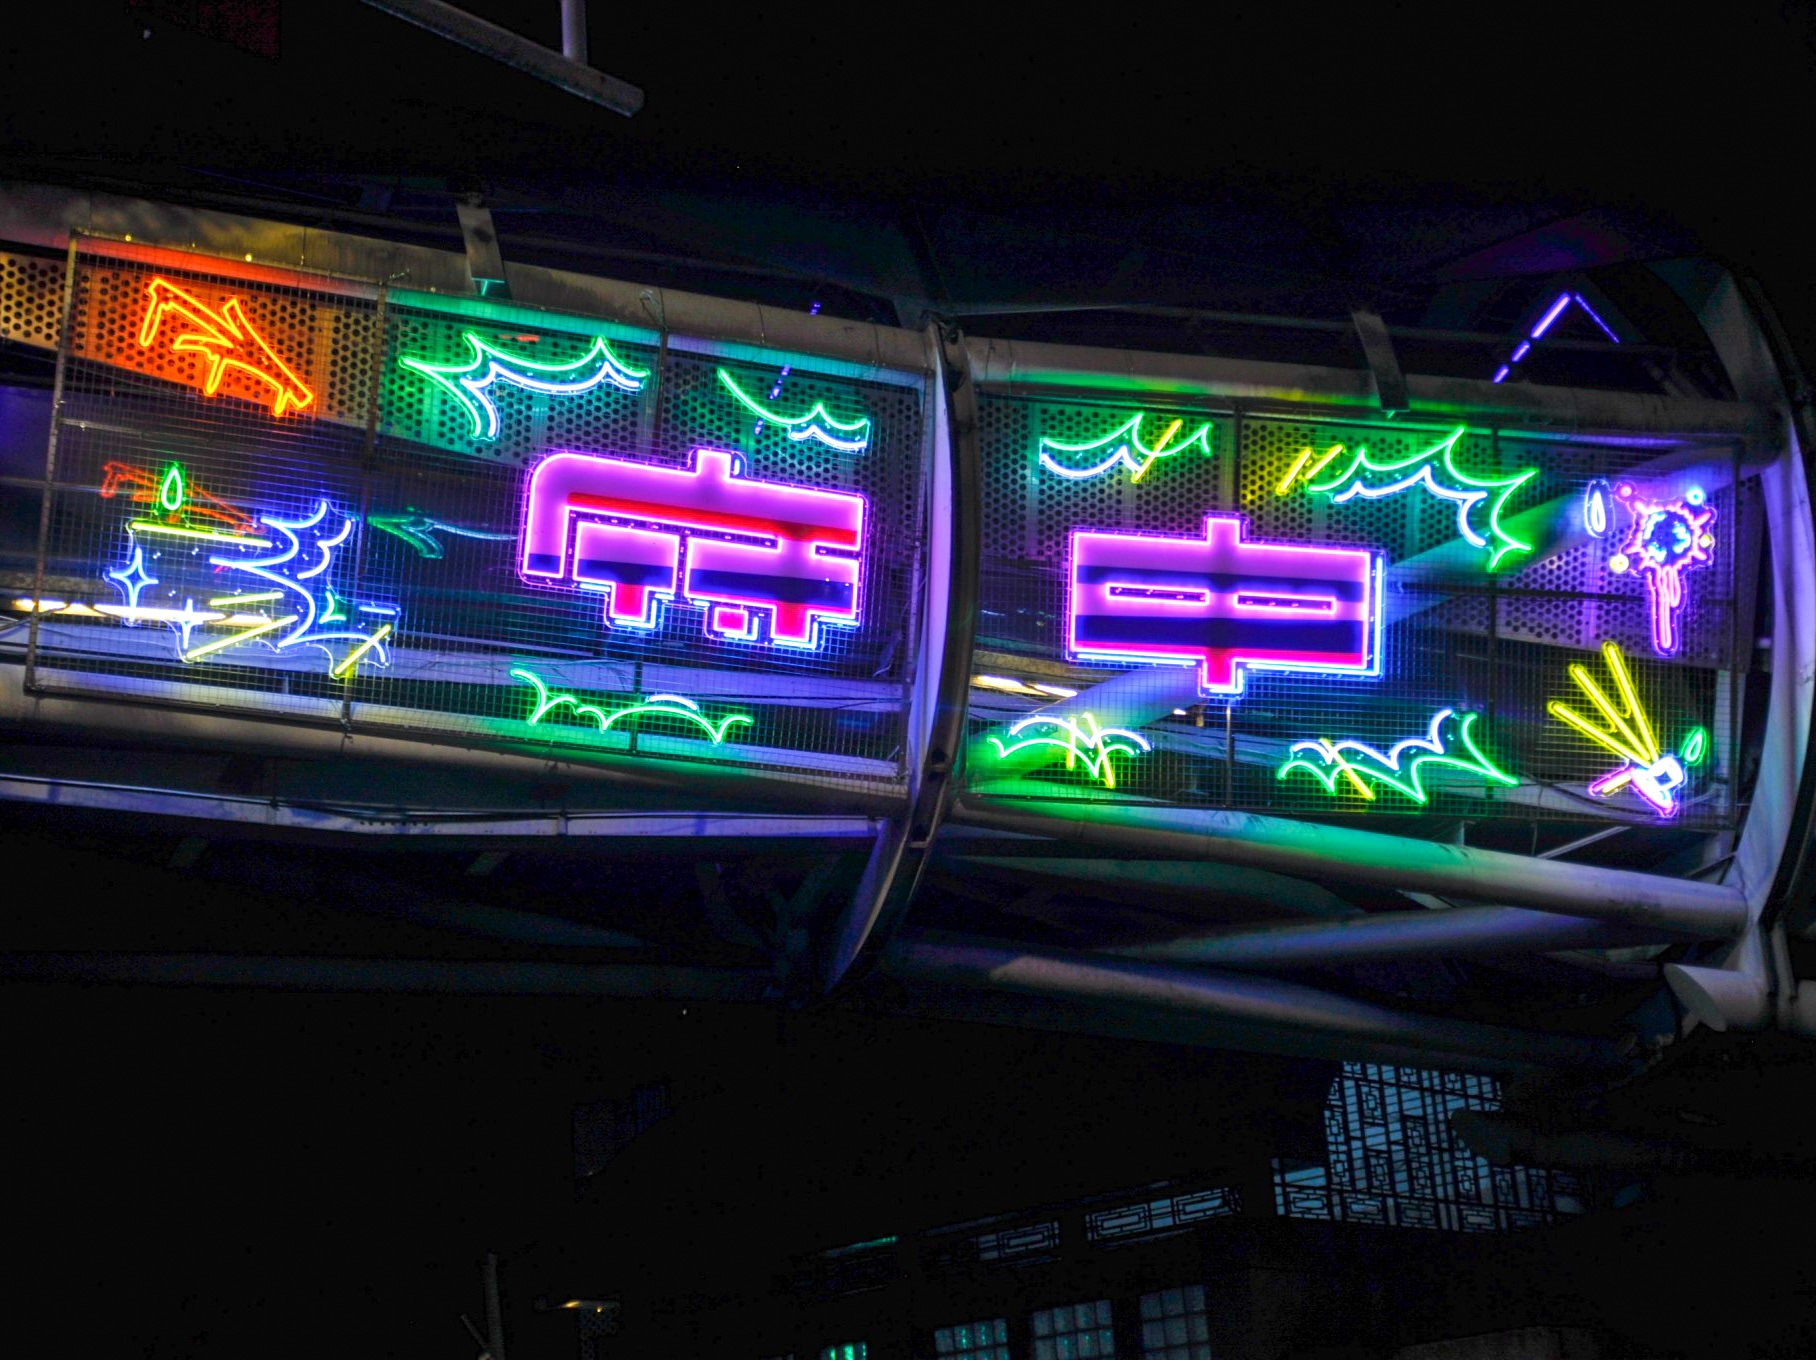 遊龍天橋上的霓虹燈裝置藝術，「府中」字樣融入火車意象，述說商圈原址為舊板橋火車站。